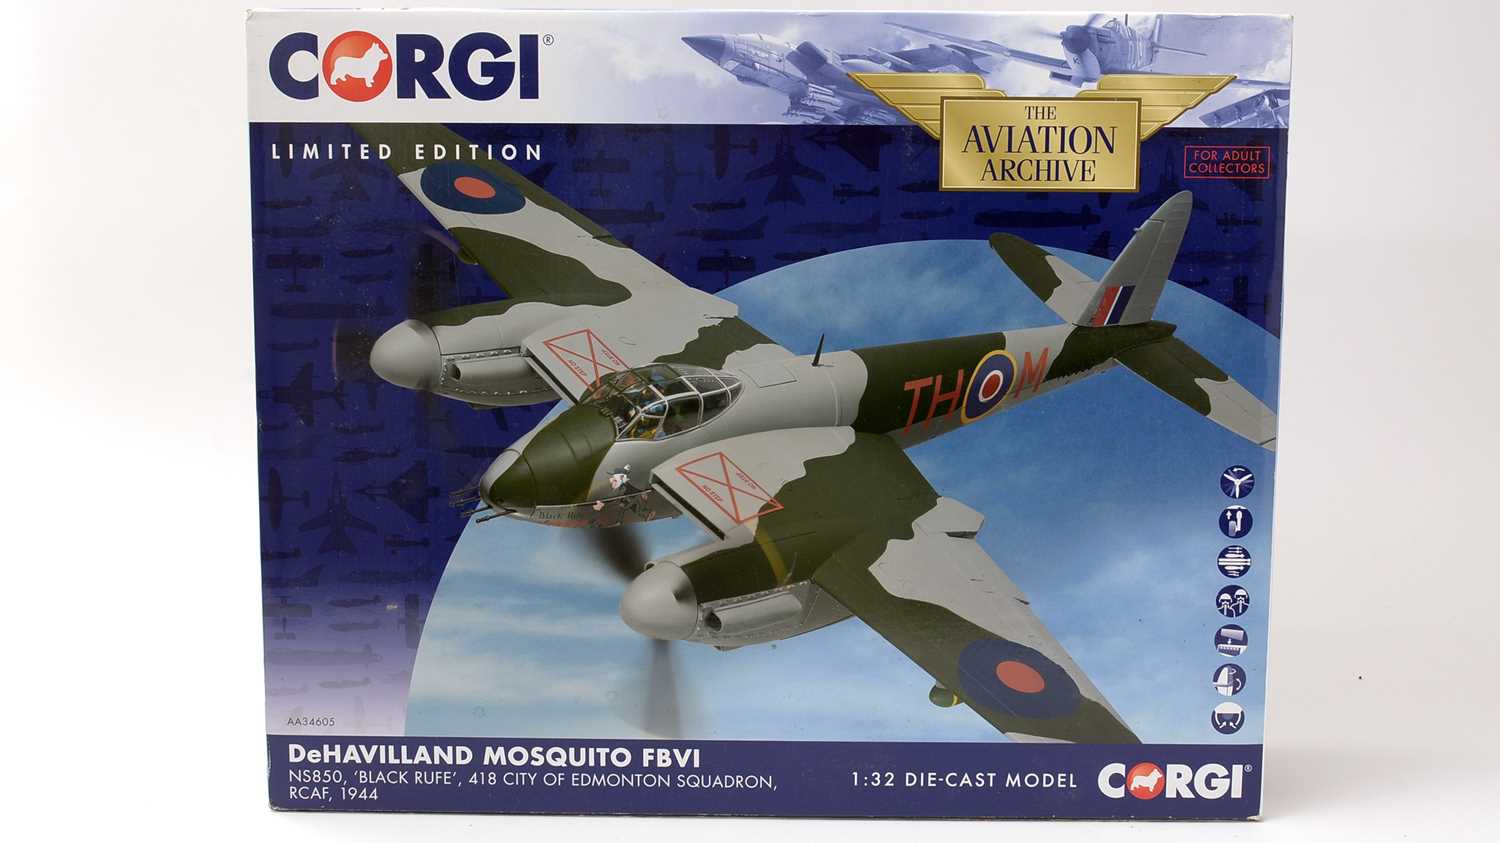 Lot 3 - A Corgi Ltd. Ed. Aviation Archive 1:32 scale diecast model Dehavilland Mosquito SBVI.